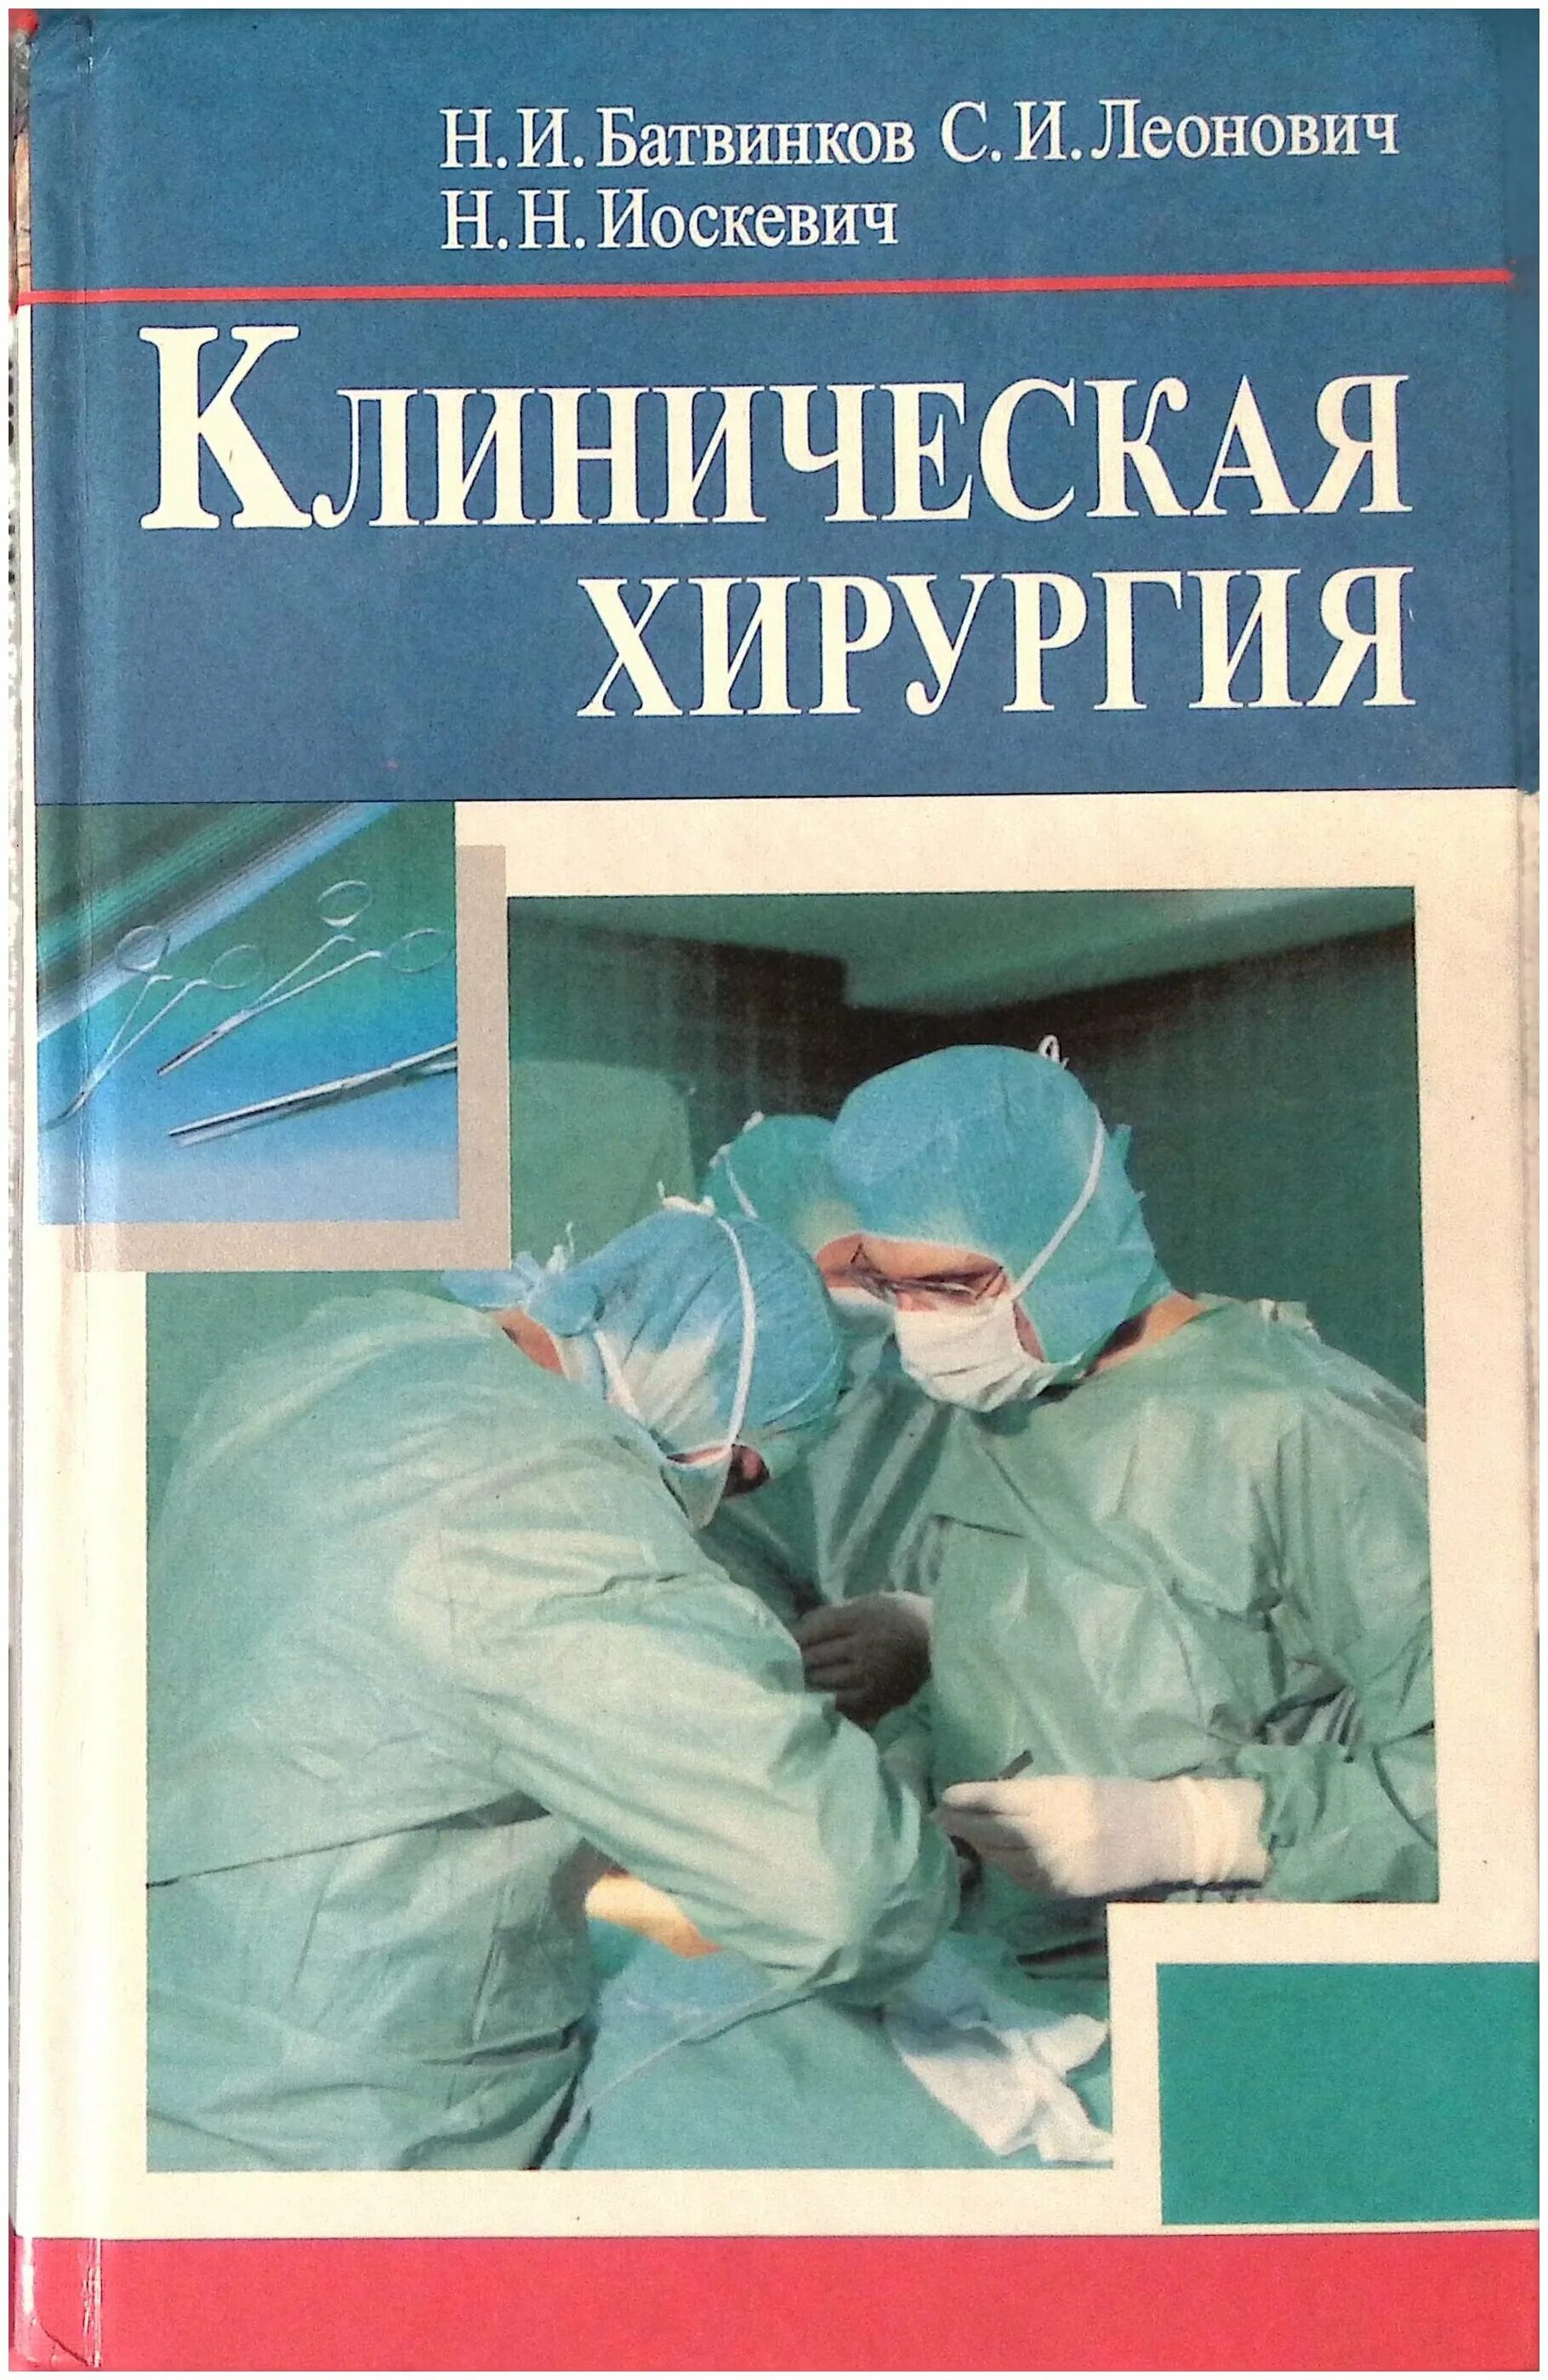 Читать книгу операция